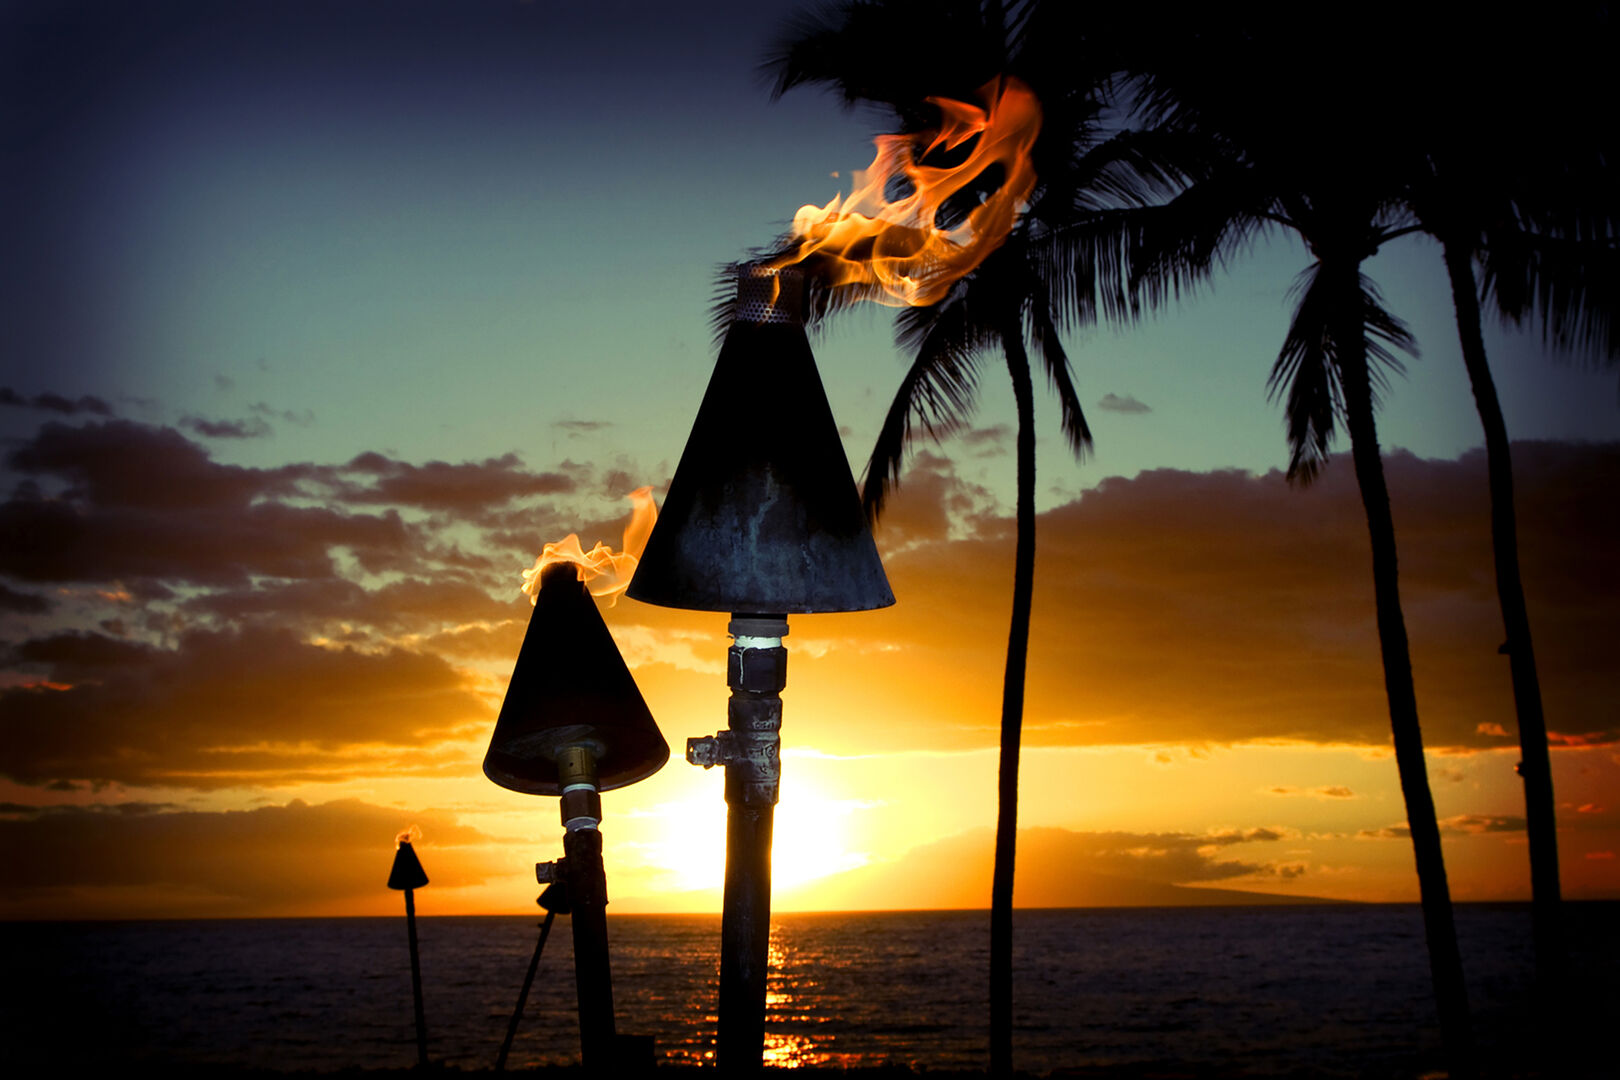 Don't miss Waikiki's spectacular sunsets!